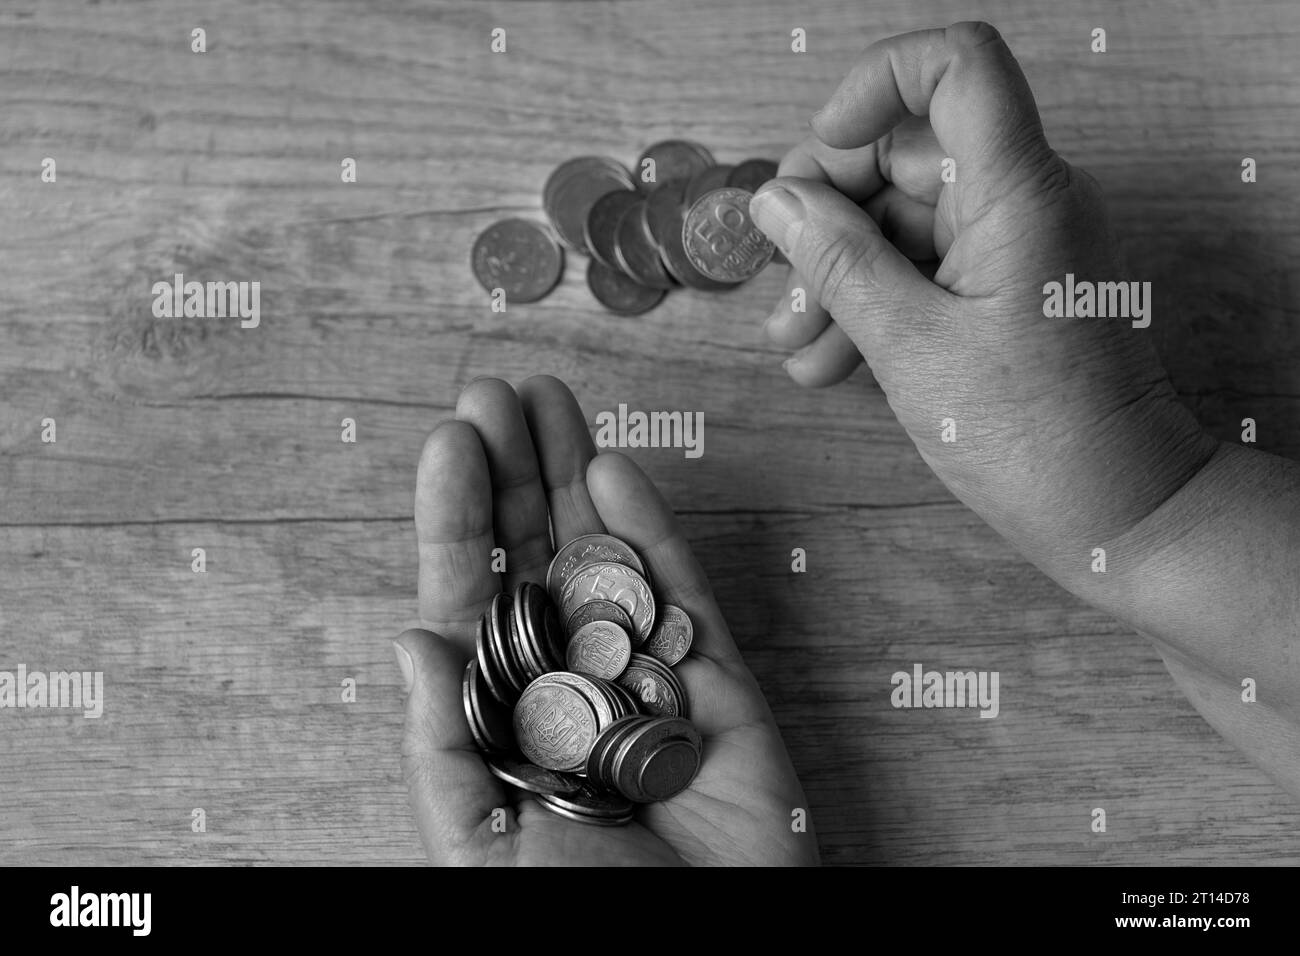 Münzen in den Palmen. Geld zählen, Münzen... Armutskonzept, Geldknappheit. Sparen. Auf einer Münze steht sie in Ukrainisch - 50, 25 und 5 Kopeken. Schwarz Stockfoto